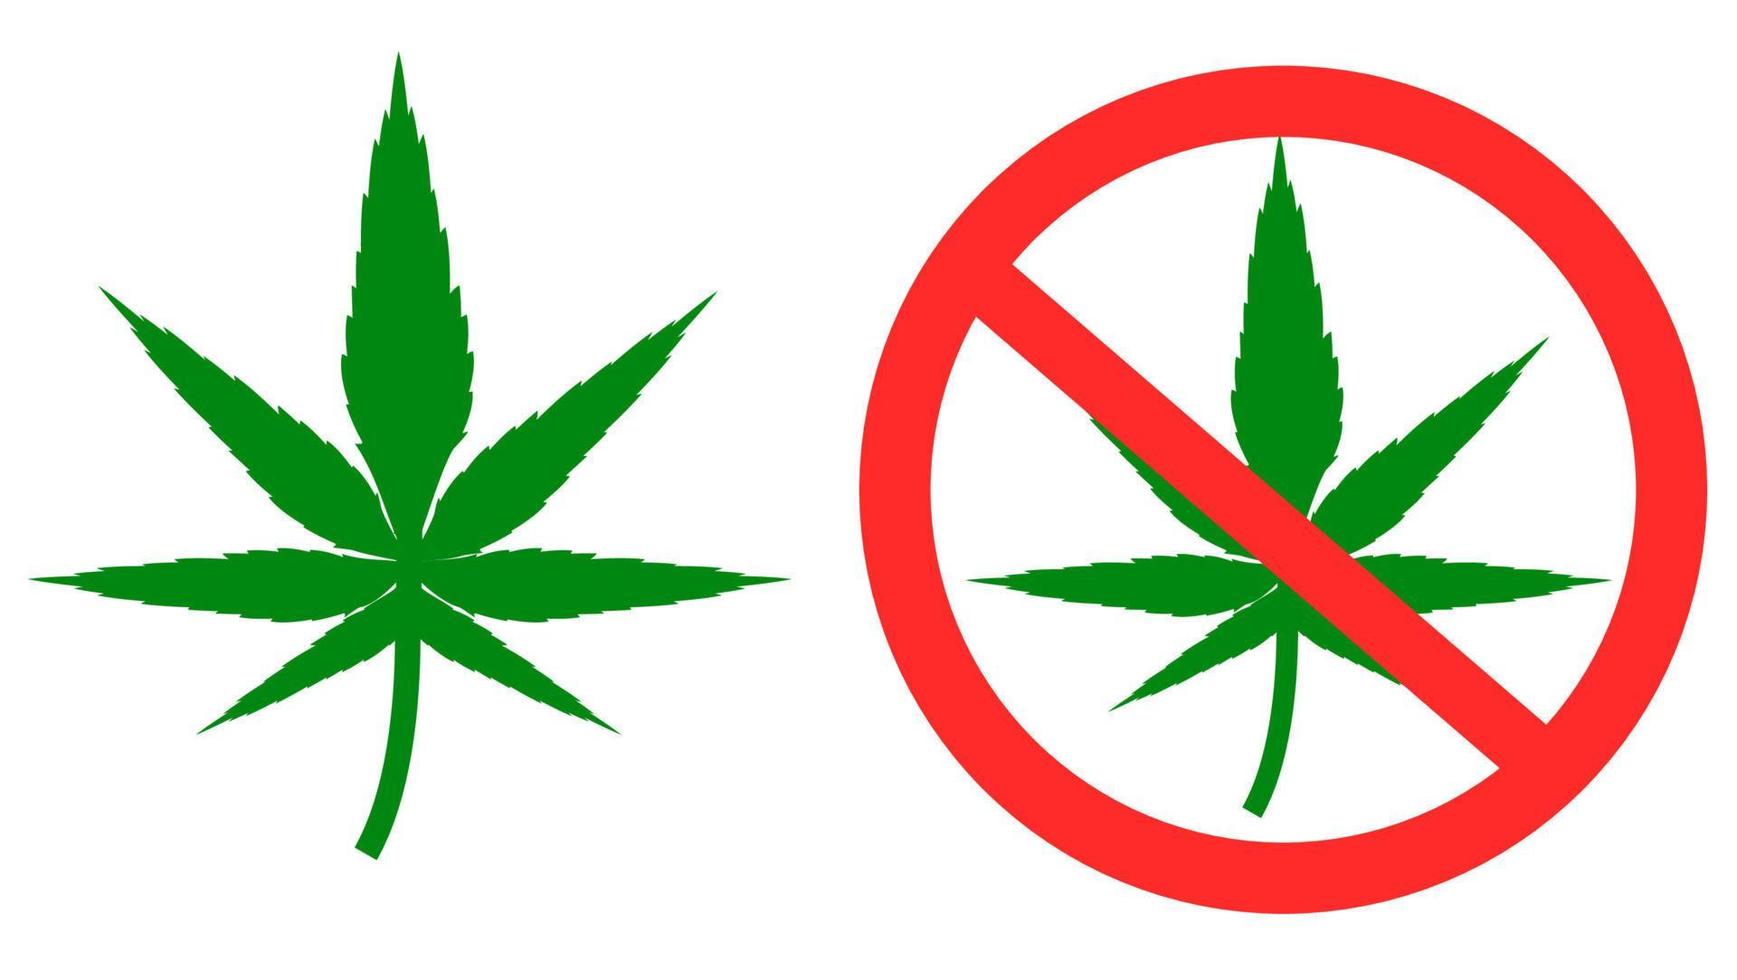 grüne cannabisblätter.medizinisches marihuana.keine droge.nicht rauchen.stopp-marihuana-zeichen isoliert auf weißem hintergrund.eingeschränkte bereiche.vektorillustration.zeichen, symbol, ikone oder logo isoliert.flaches design. vektor